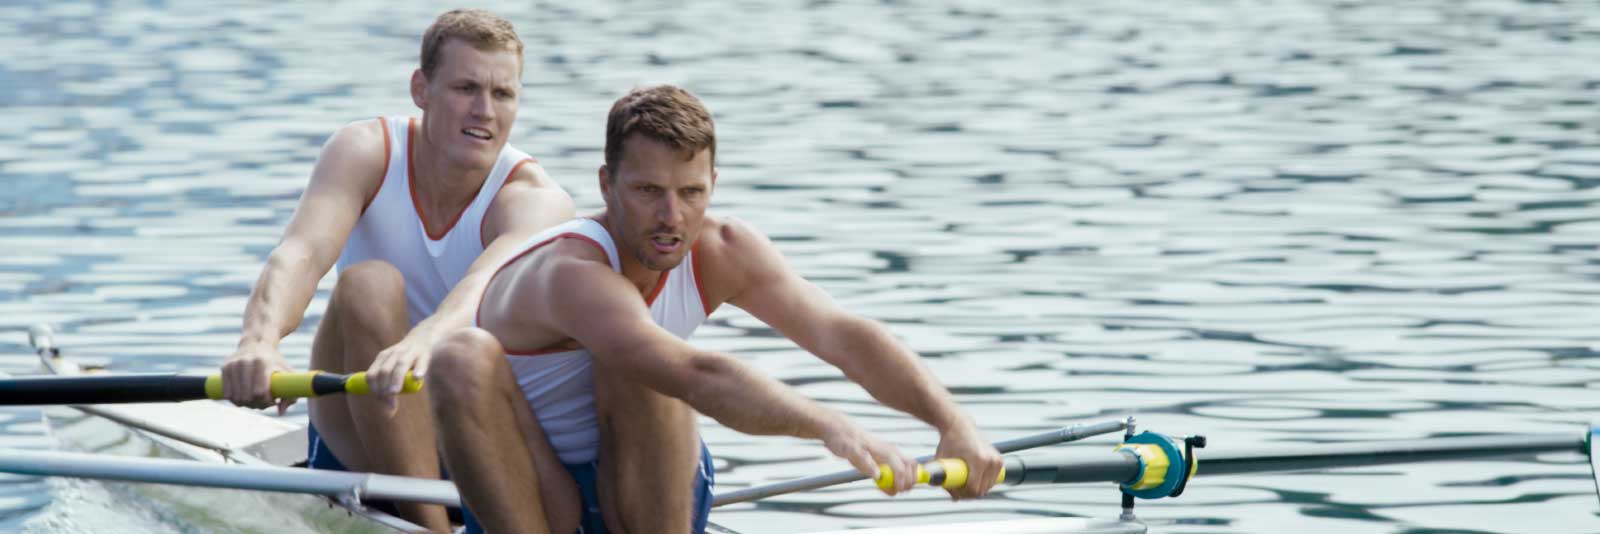 IMG male athletes rowing